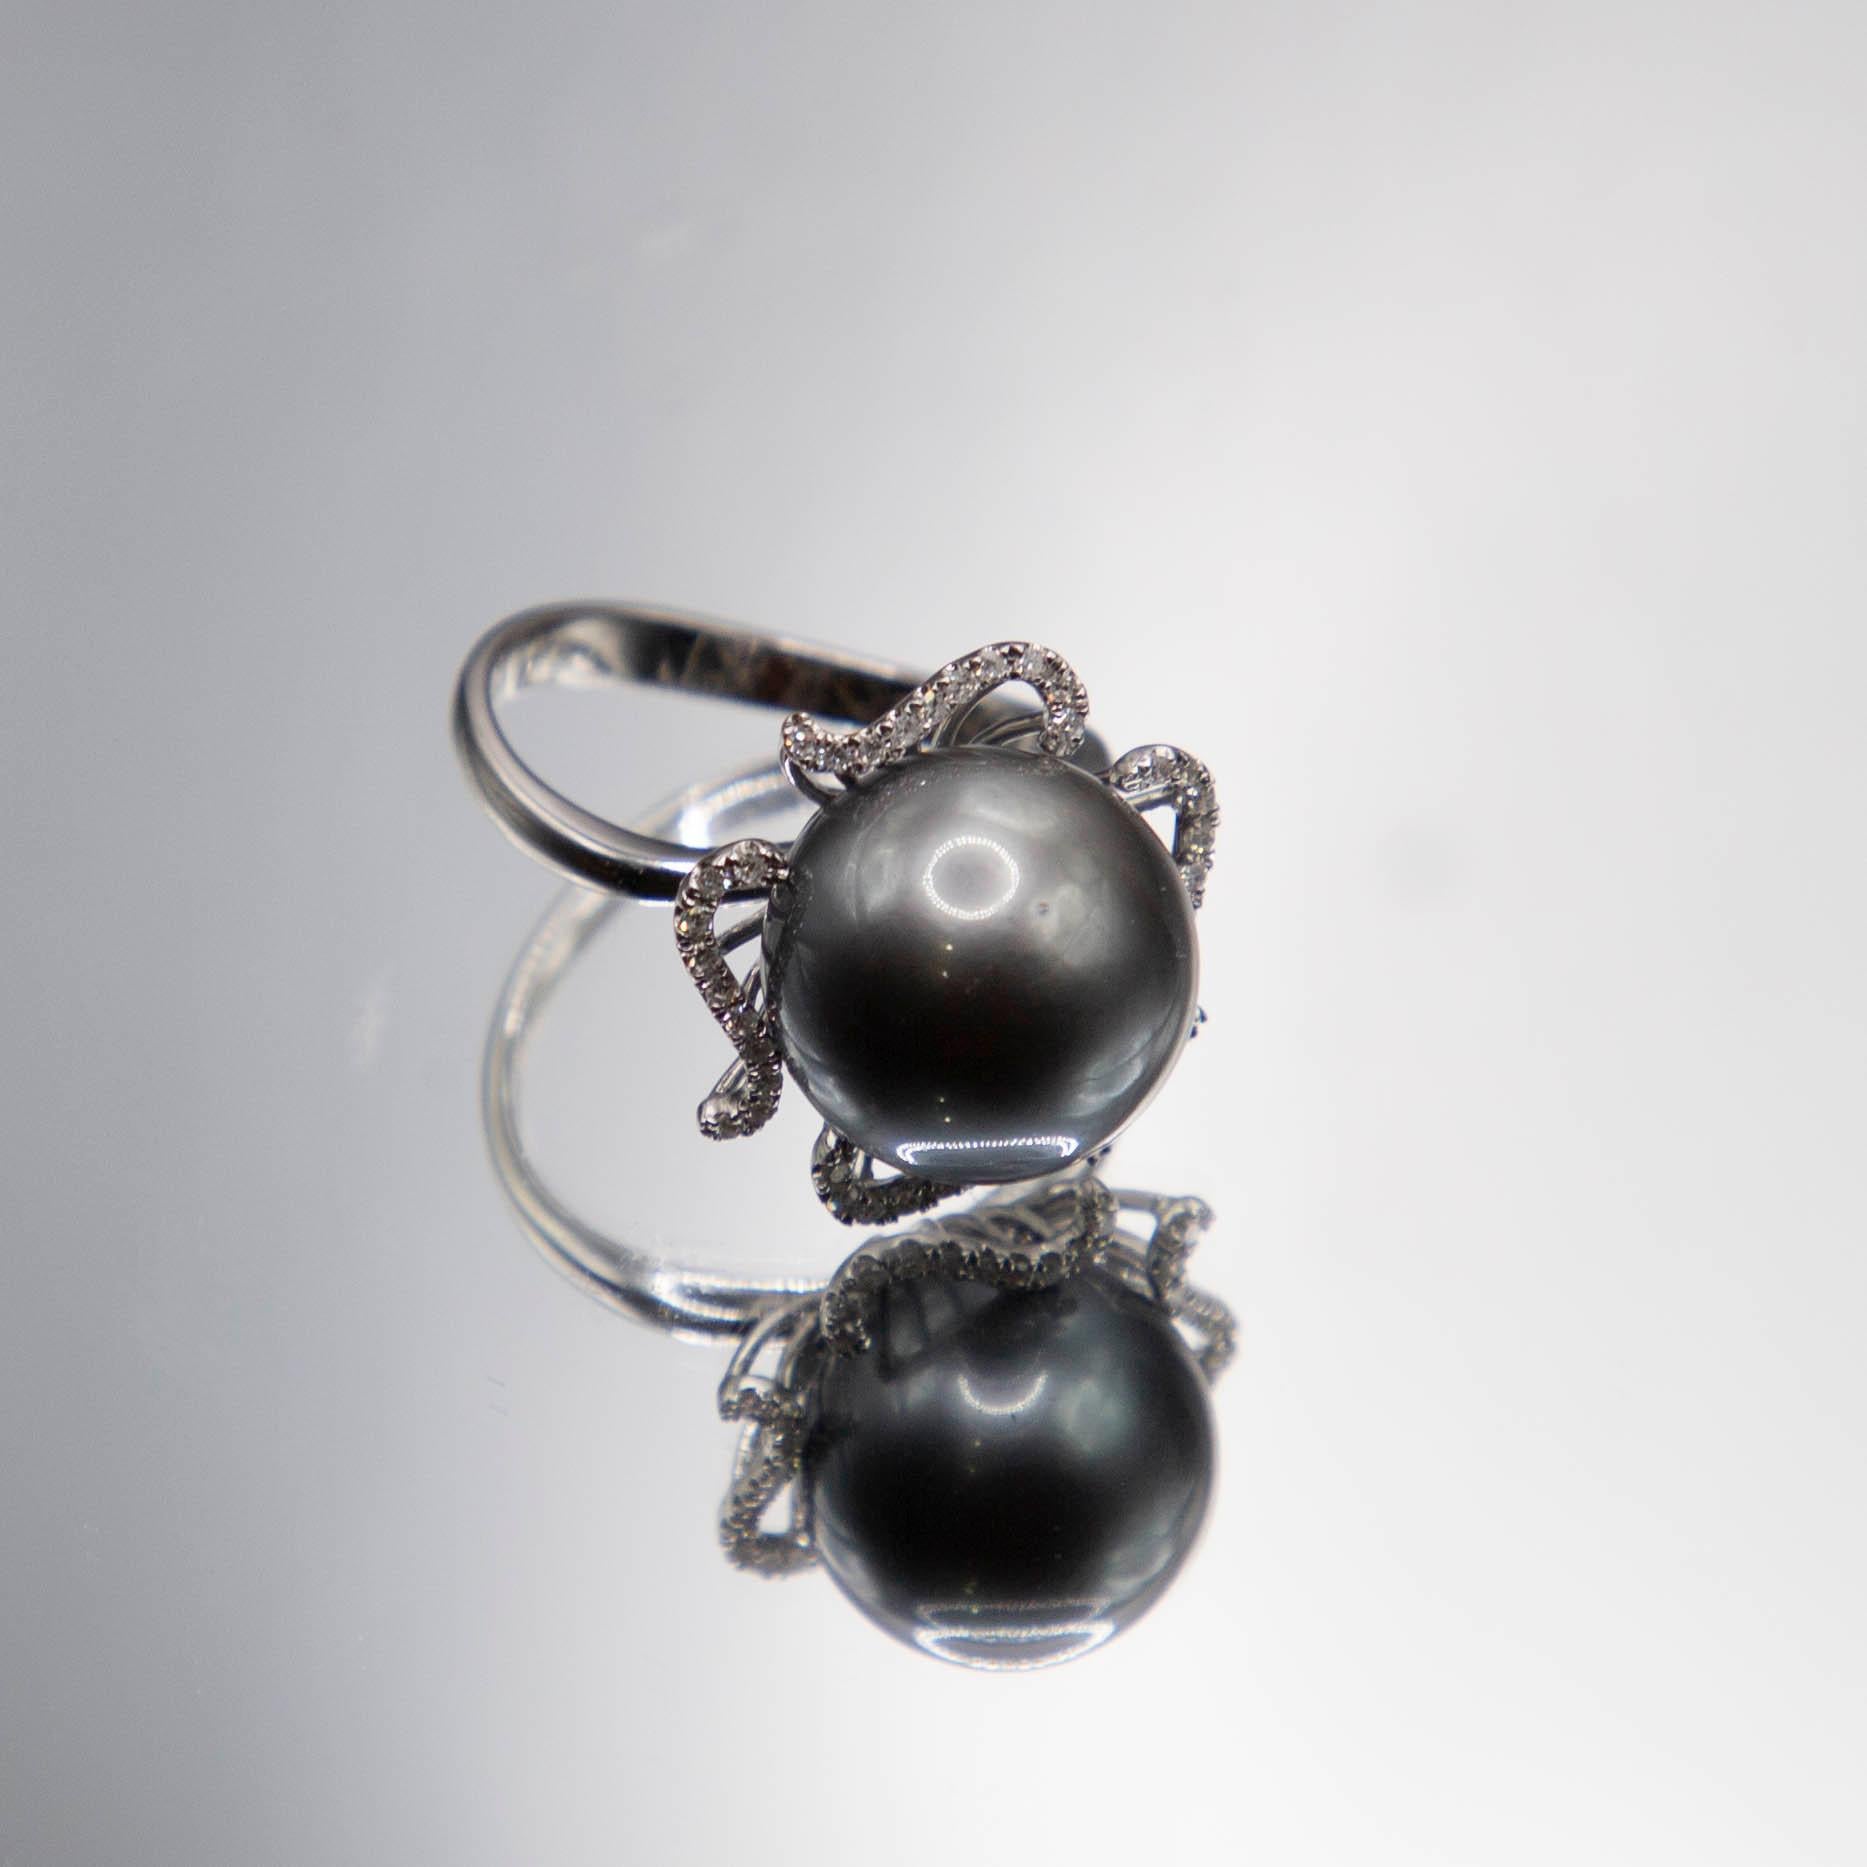 Der zentrale Edelstein in diesem eleganten Ring ist eine seltene 12,5 mm große Tahiti-Perle, die eine satte schwarz-graue Farbe und einen sehr hohen Glanz aufweist,  eine praktisch makellose Oberfläche, eine gleichmäßige Sättigung, eine